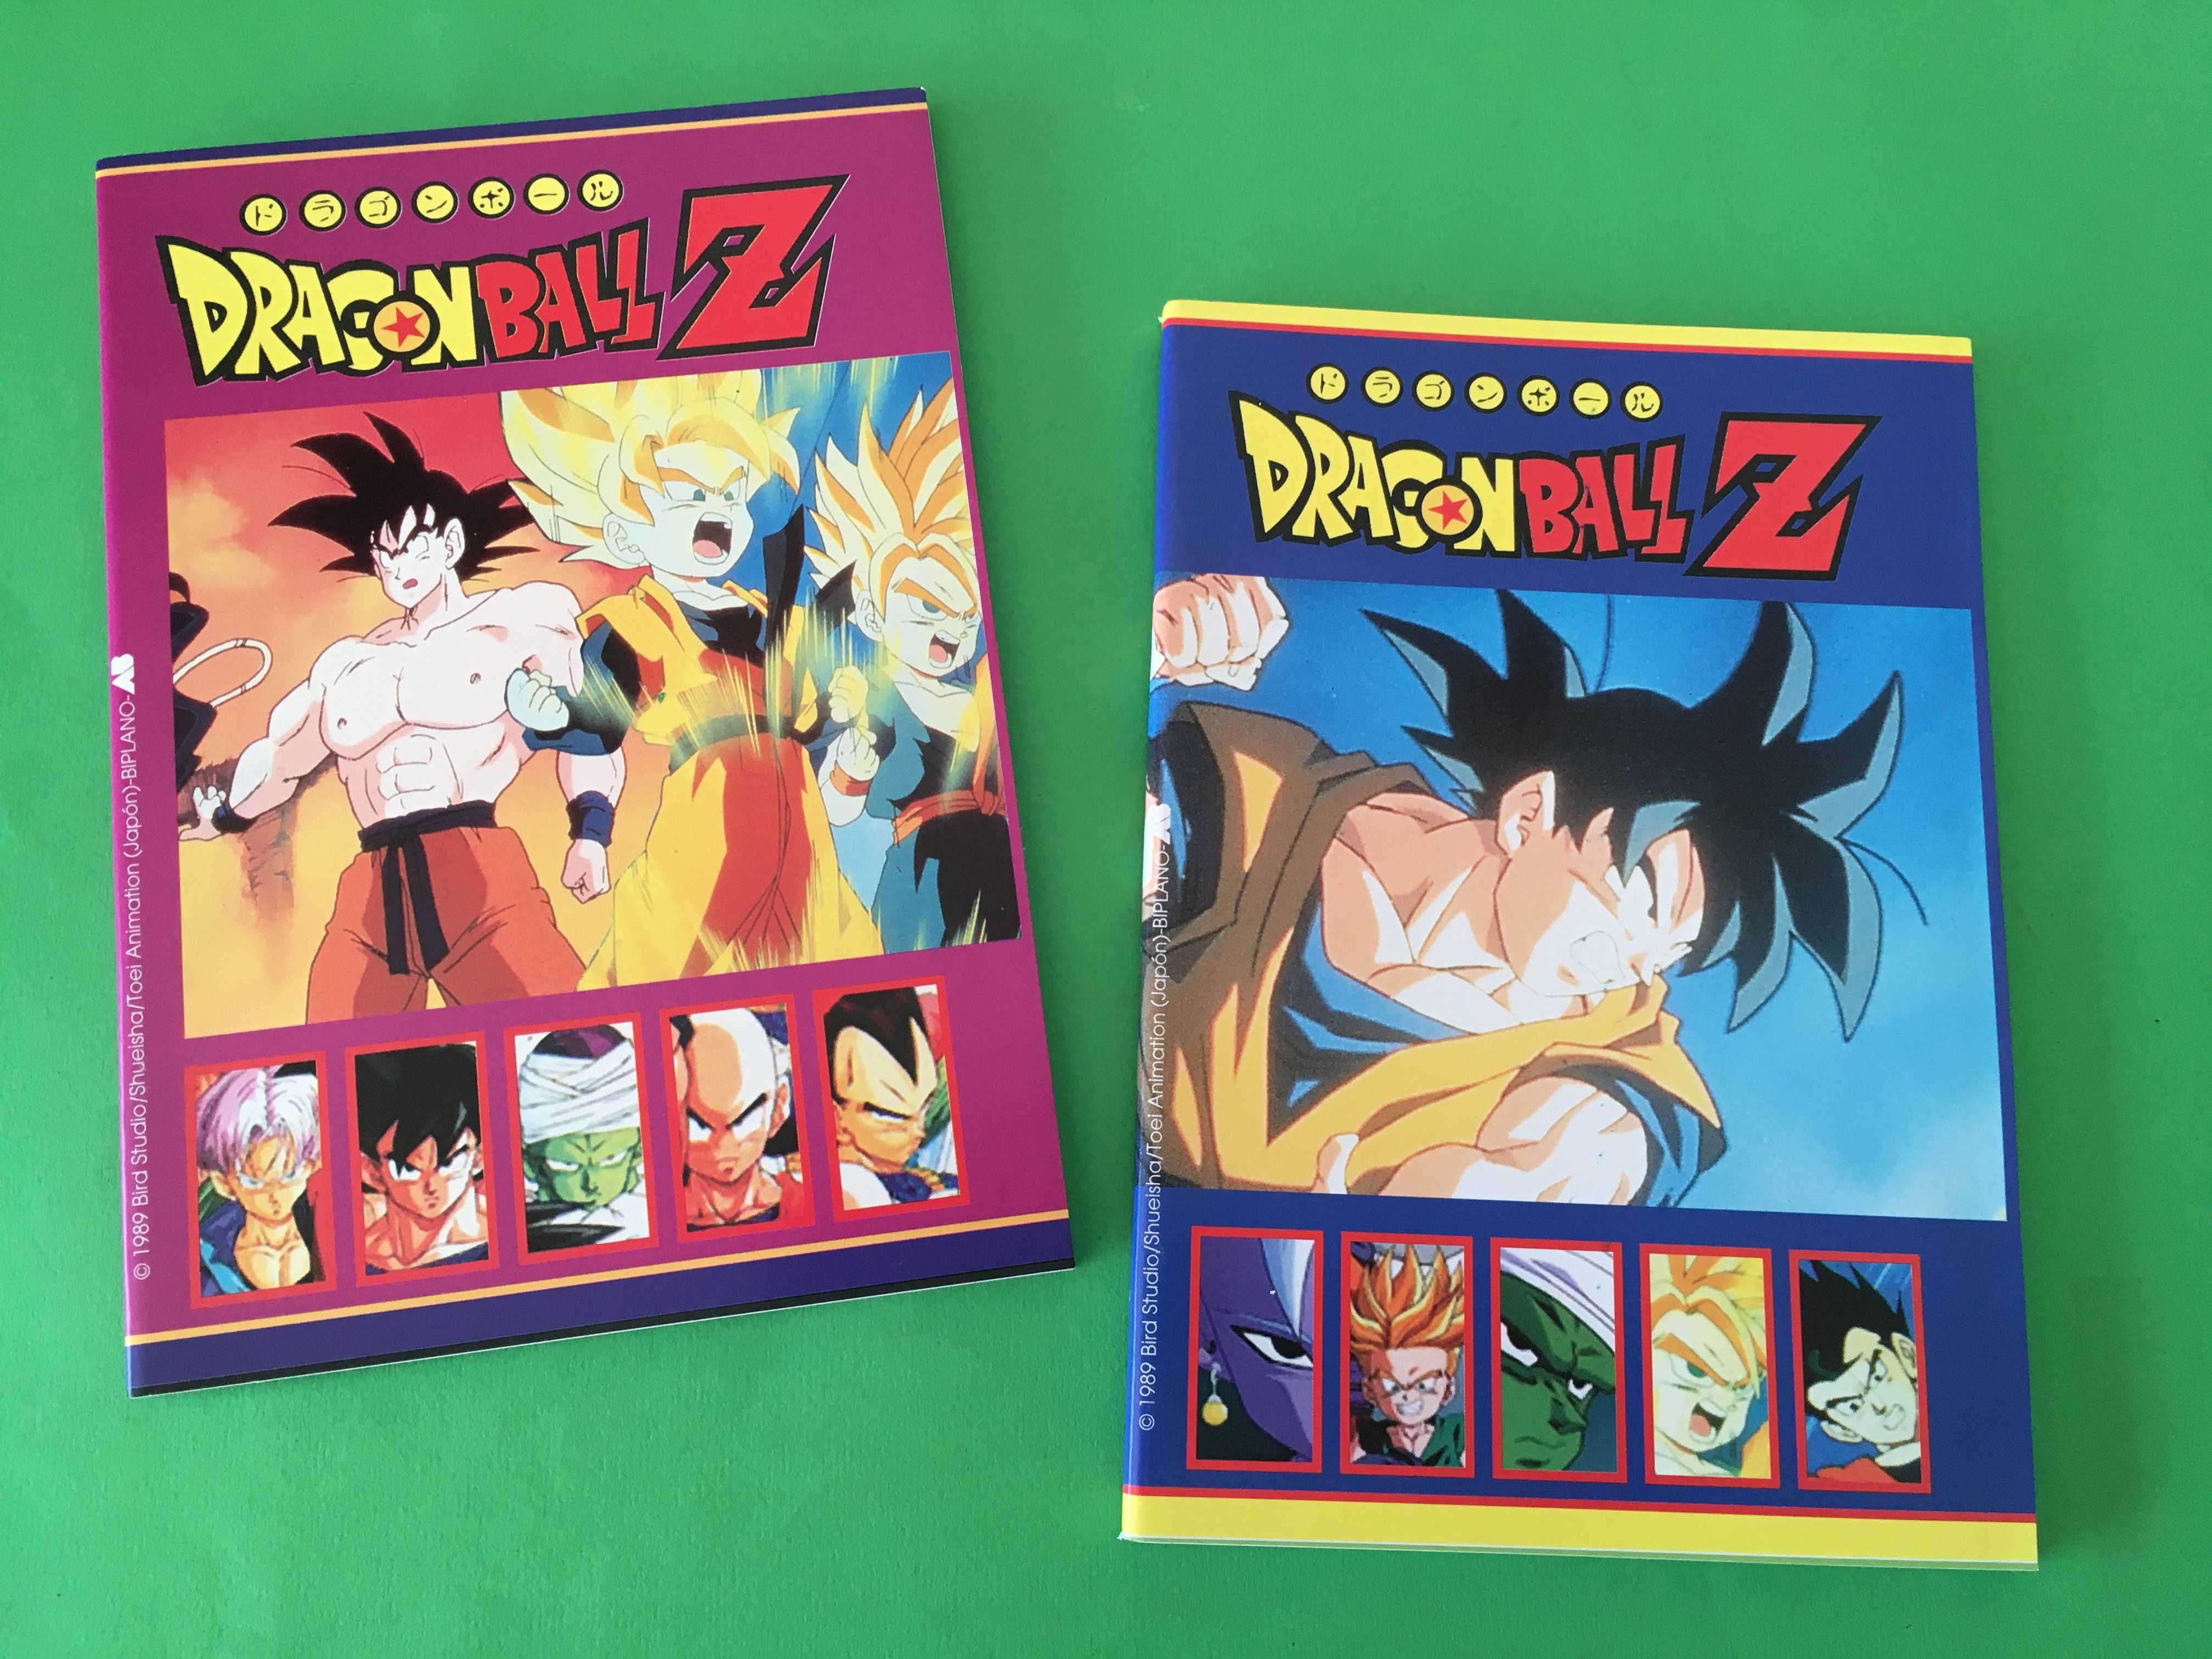 Colecção de 4 Cadernos do Dragon Ball Z 1989 Toei Animation Novos